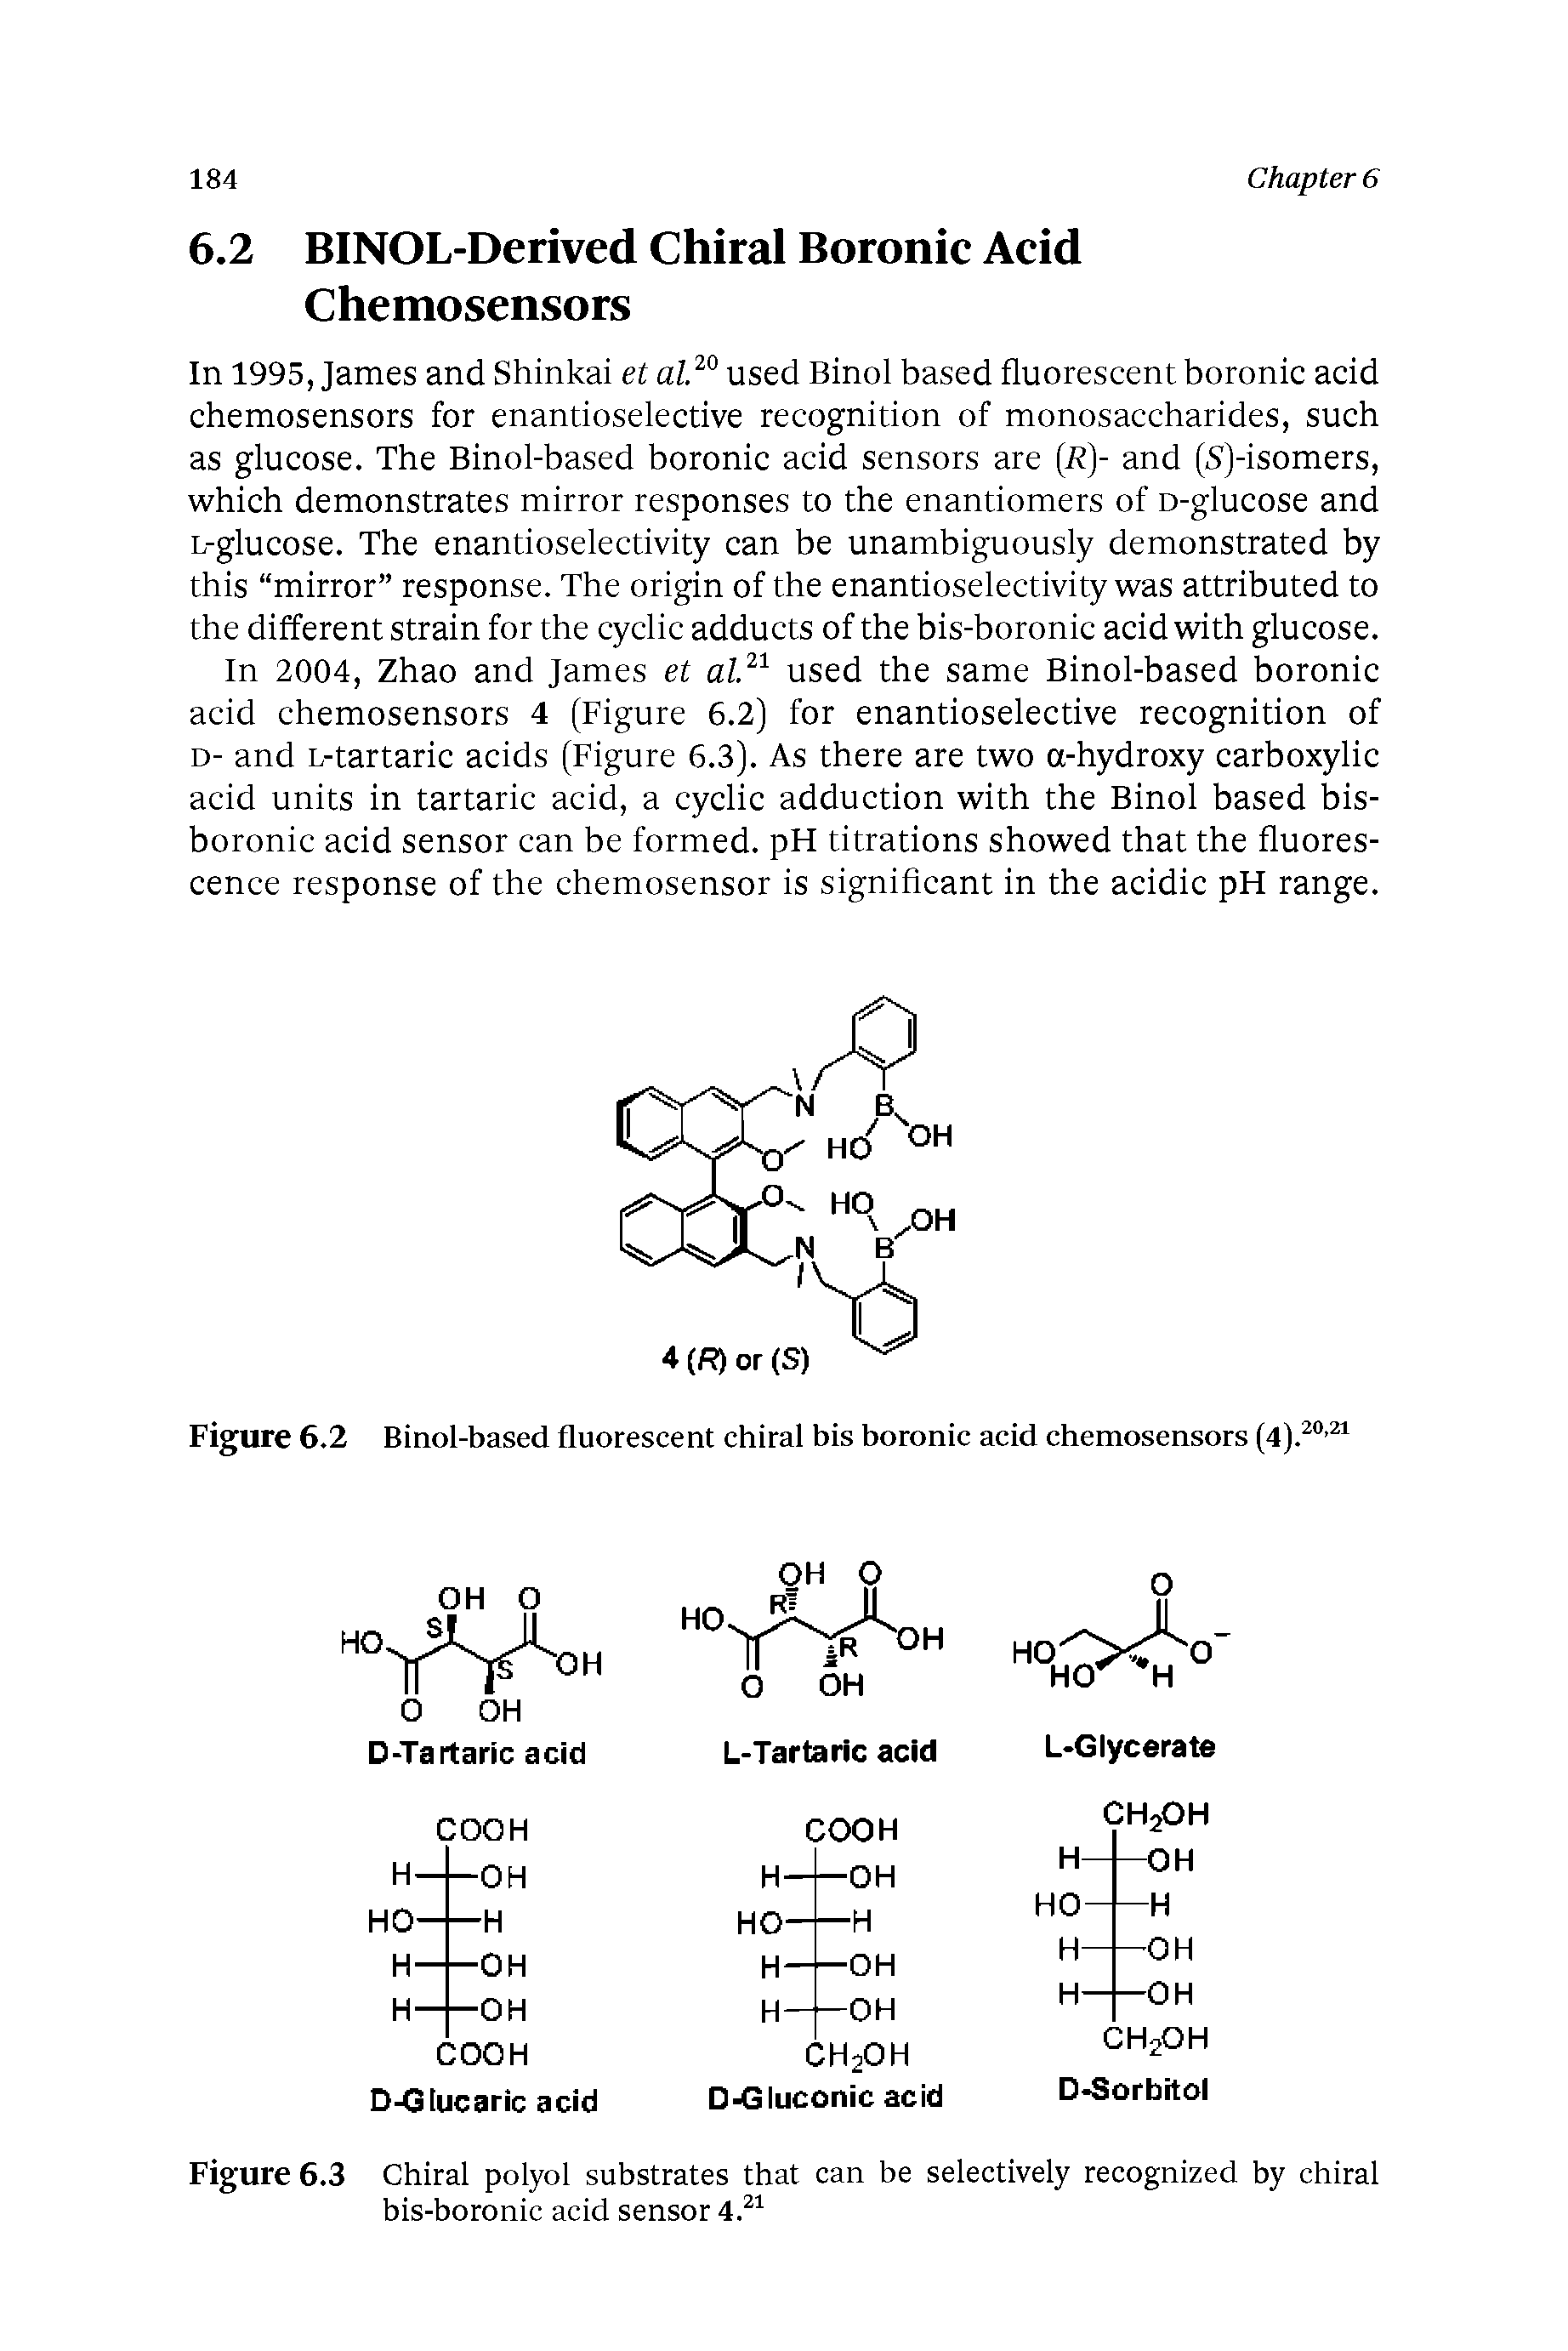 Figure 6.2 Binol-based fluorescent chiral bis boronic acid chemosensors (4).